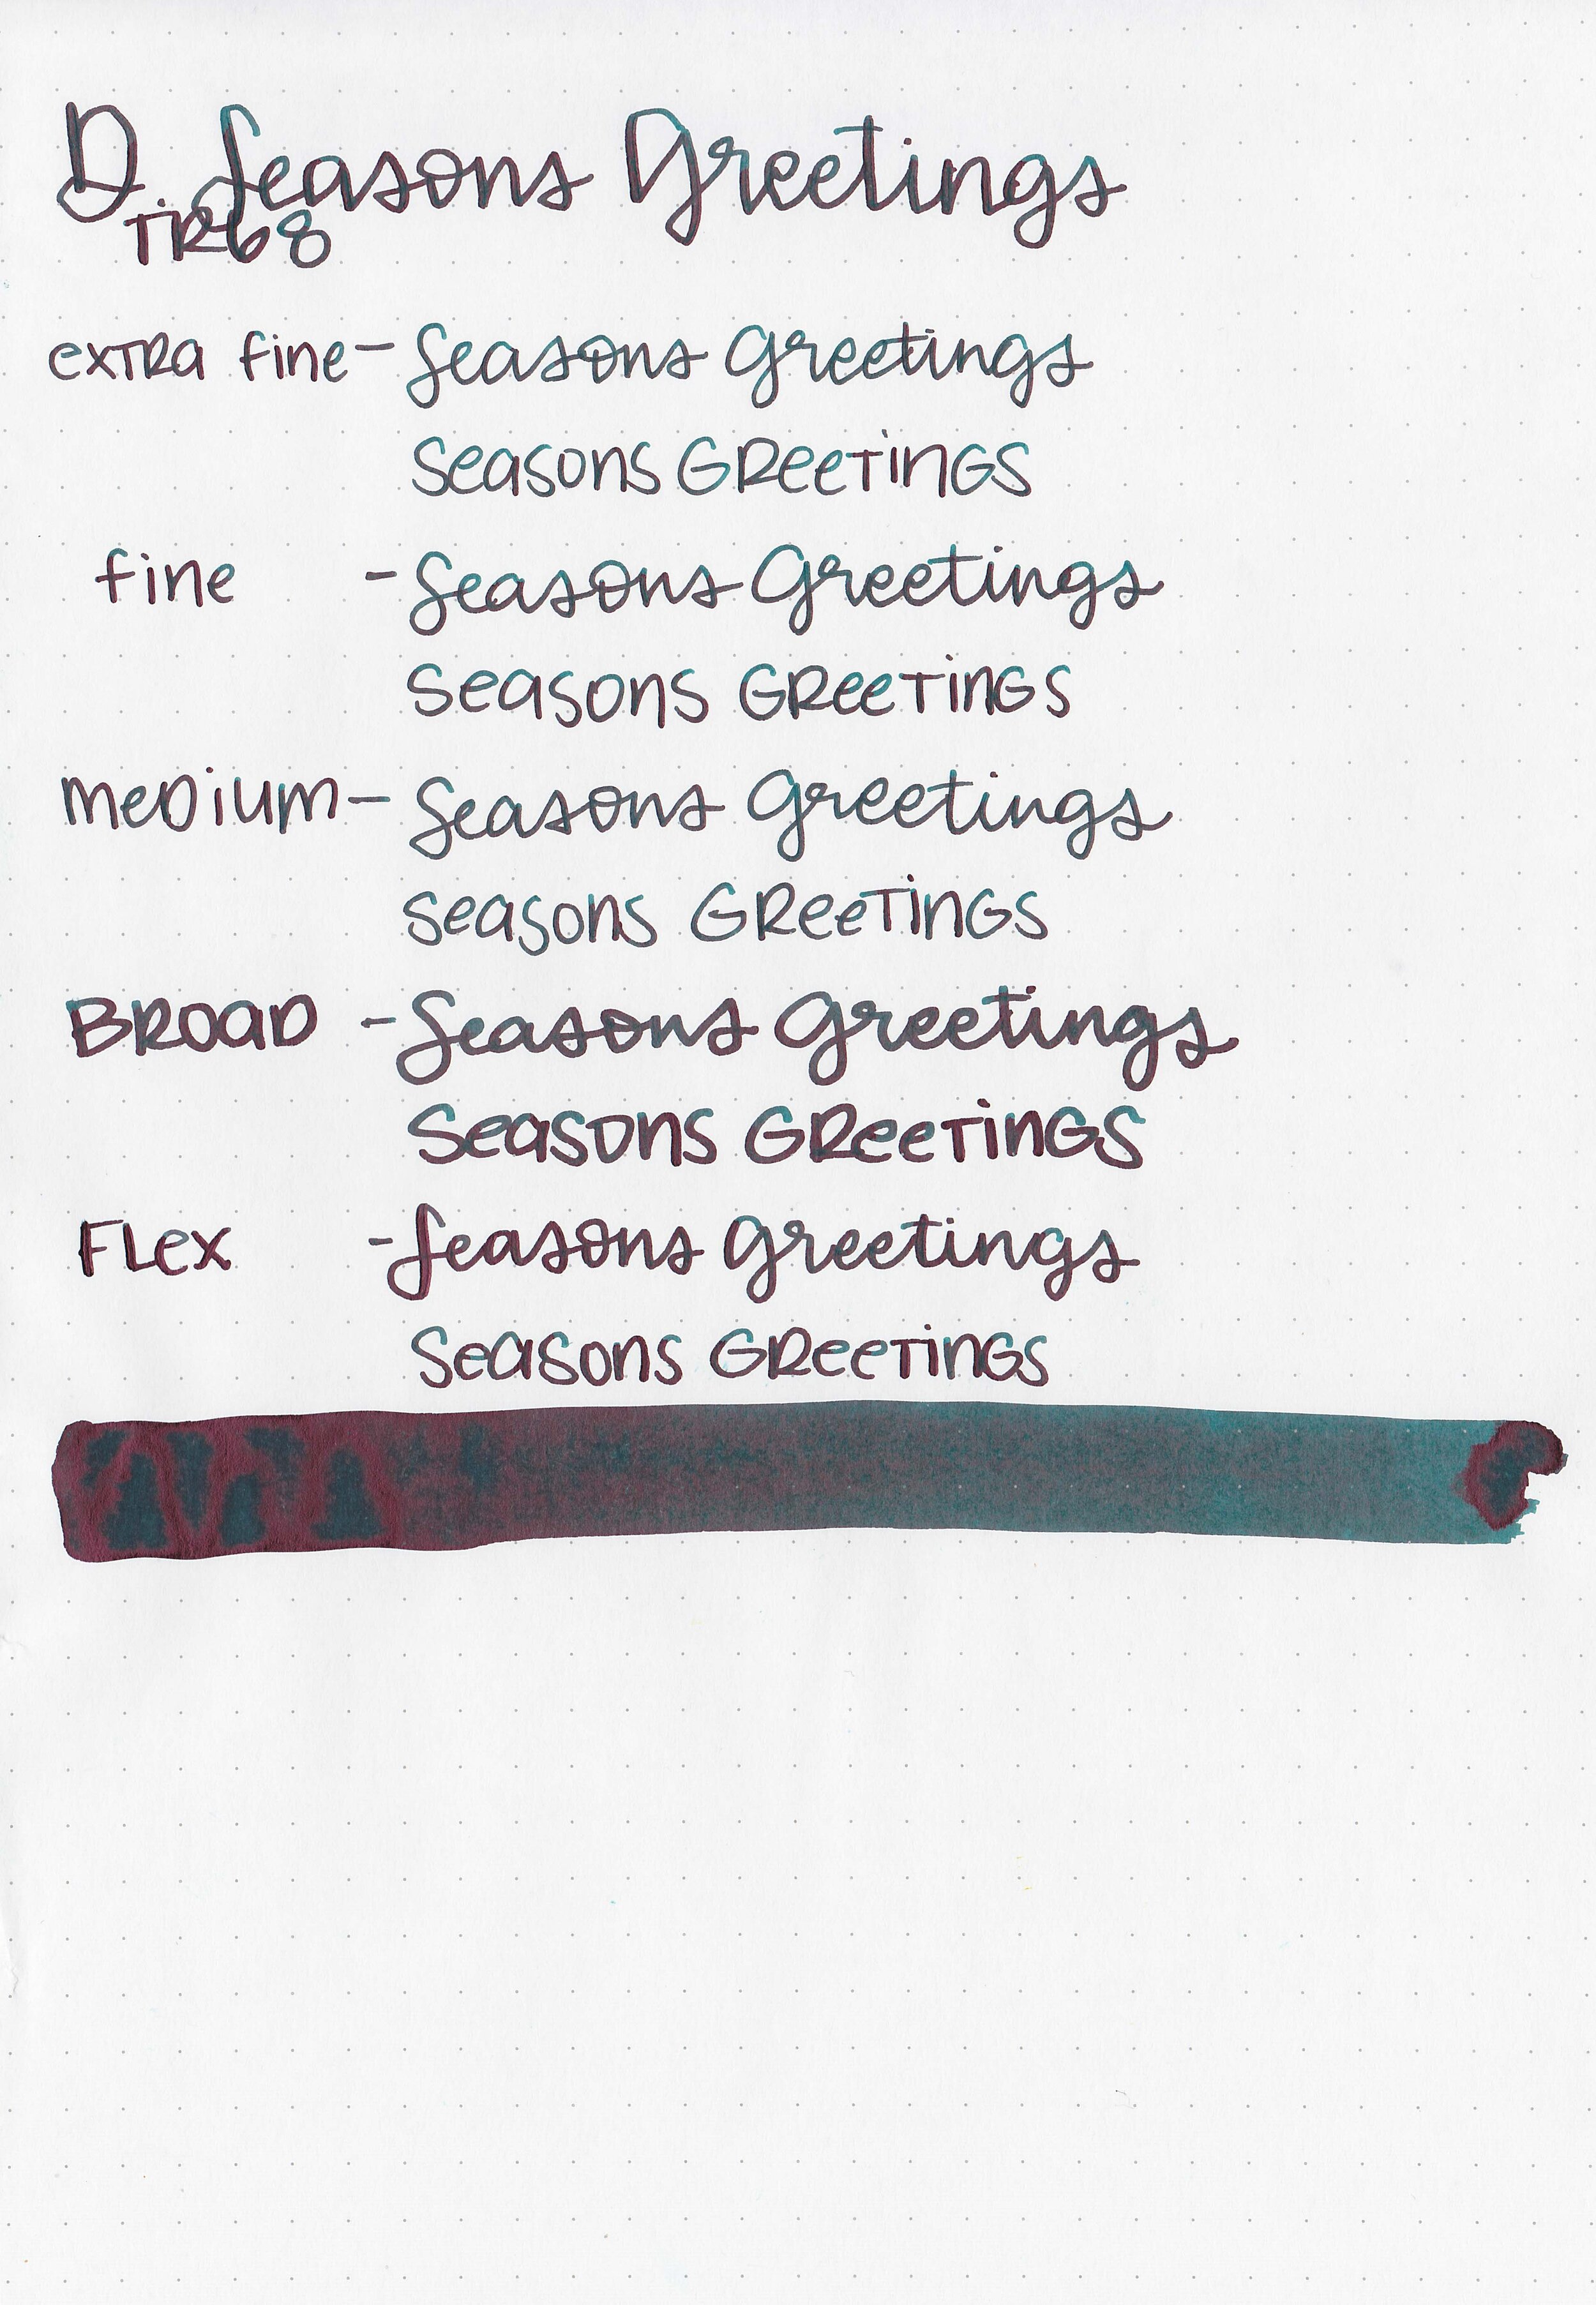 d-seasons-greetings-7.jpg